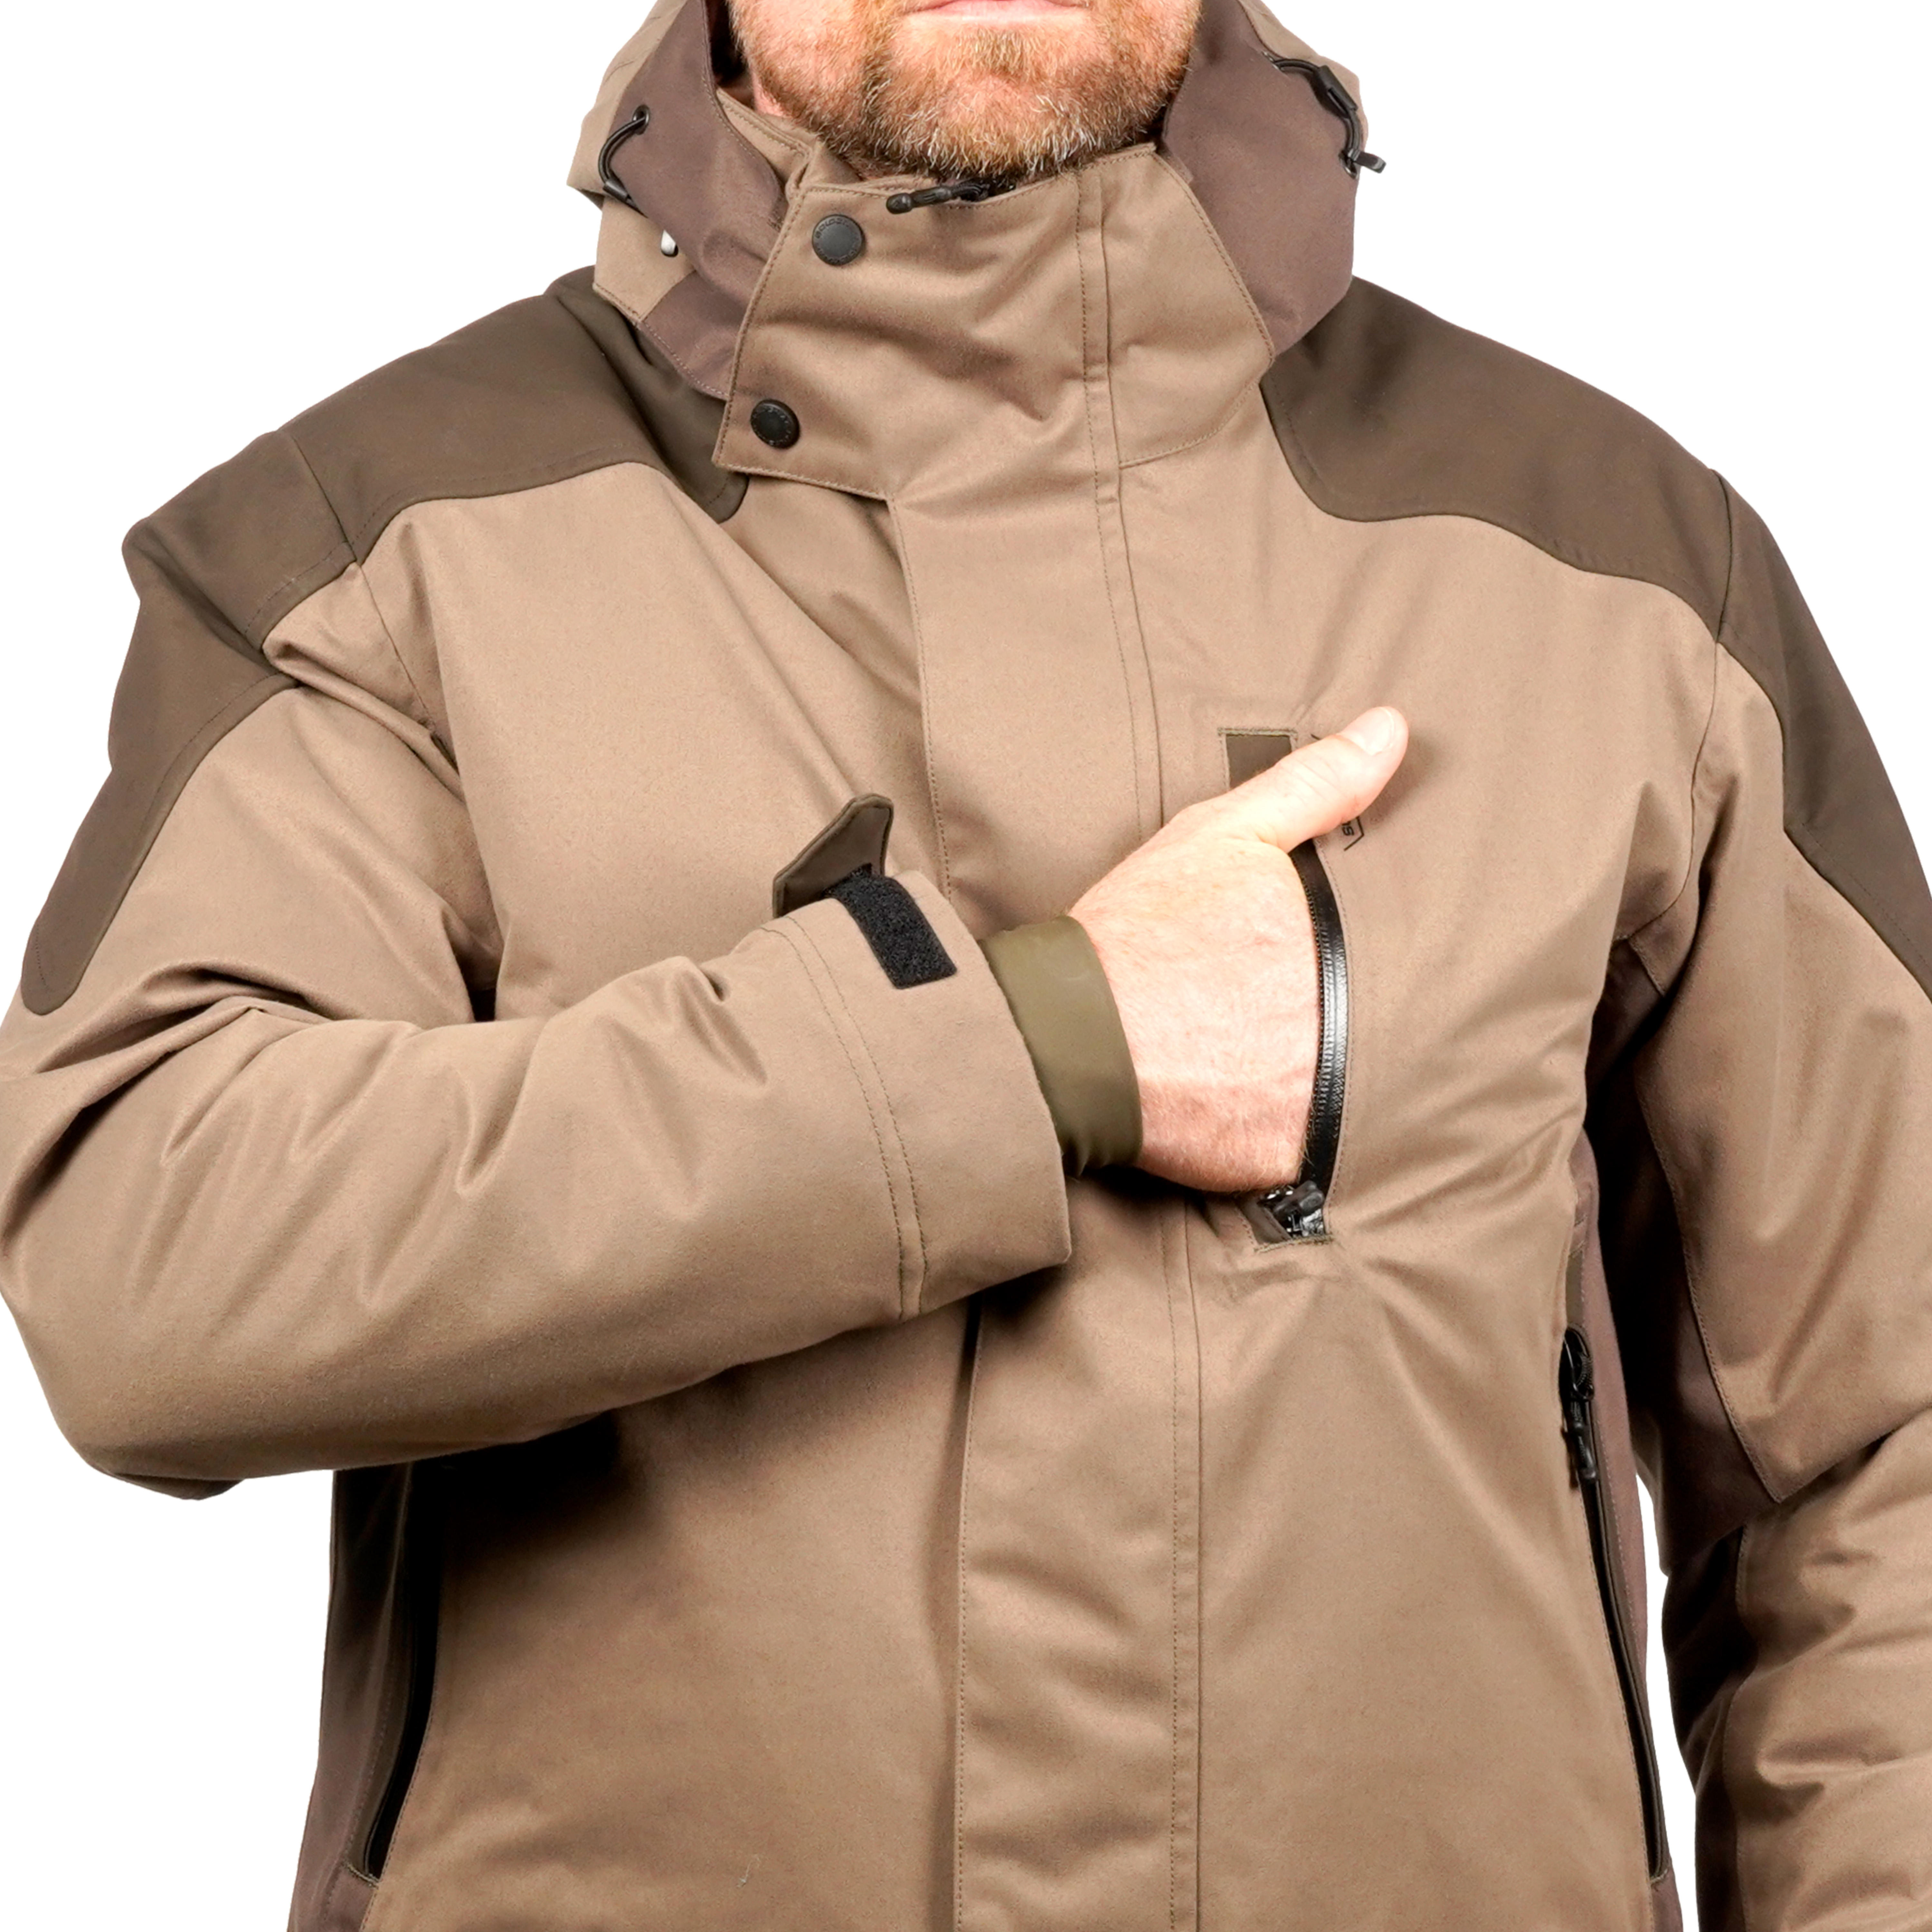 Hunting Jacket Warm Silent Waterproof - 520 Brown - SOLOGNAC